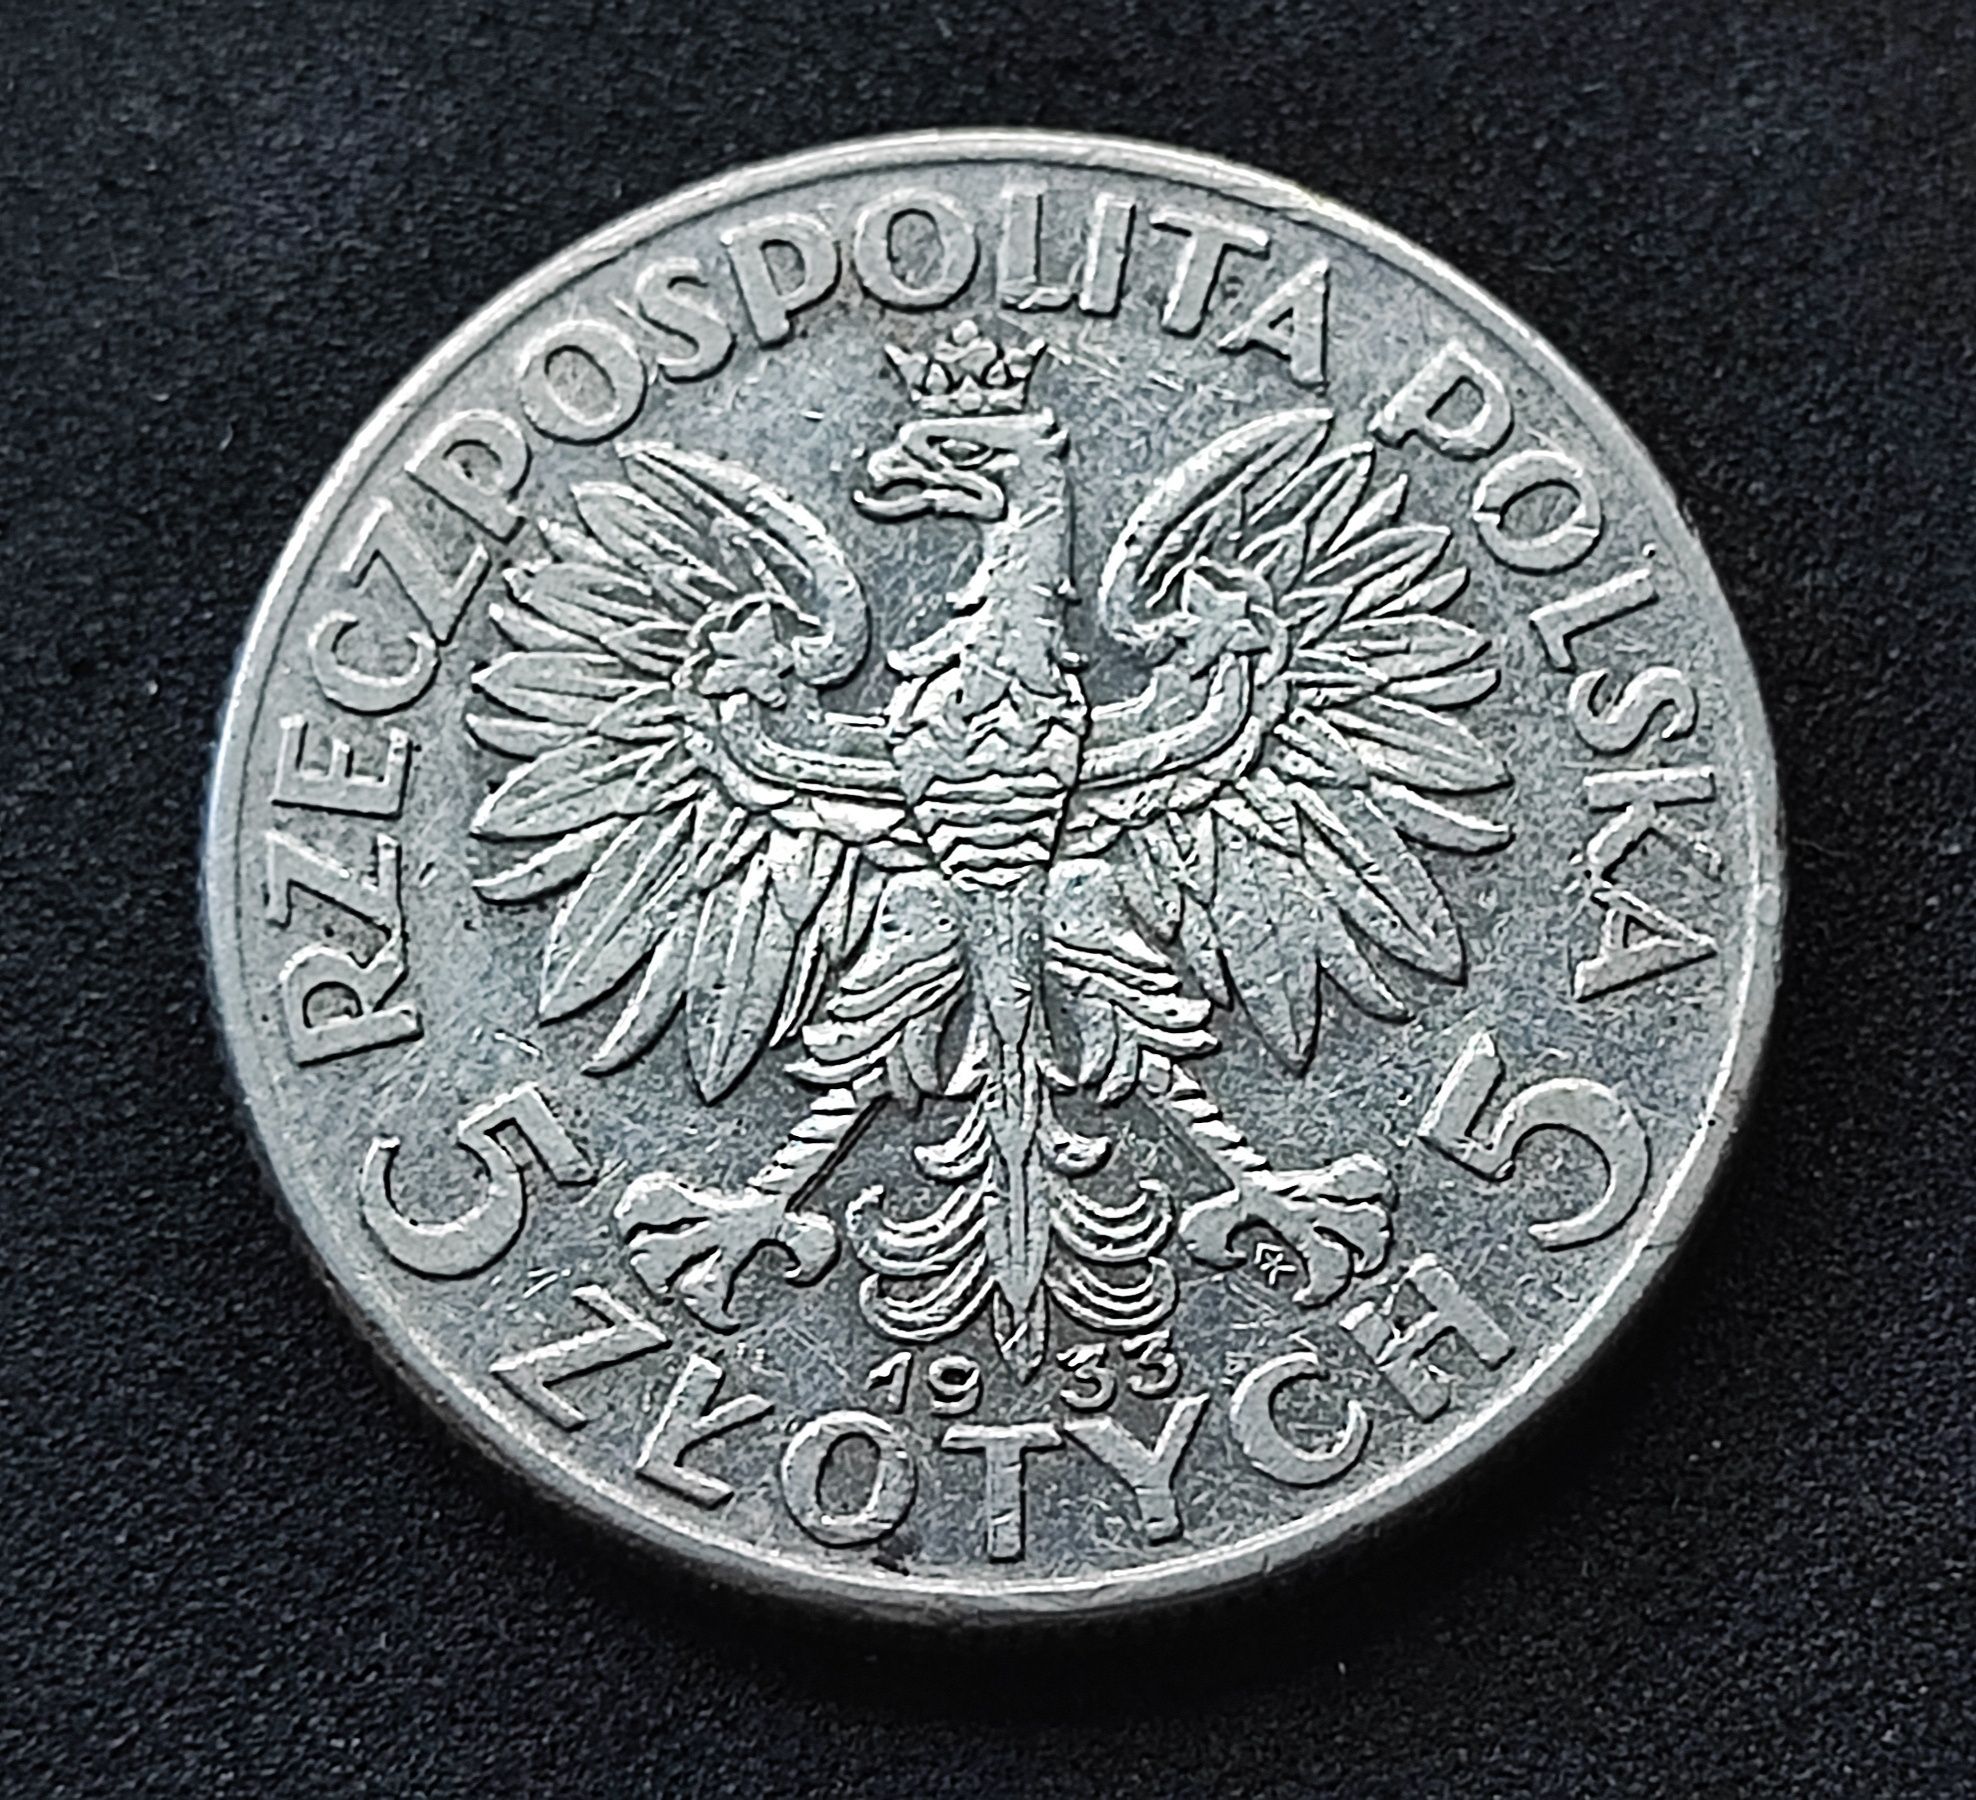 Polonia, głowa kobiety 5zl 1933r zm srebro